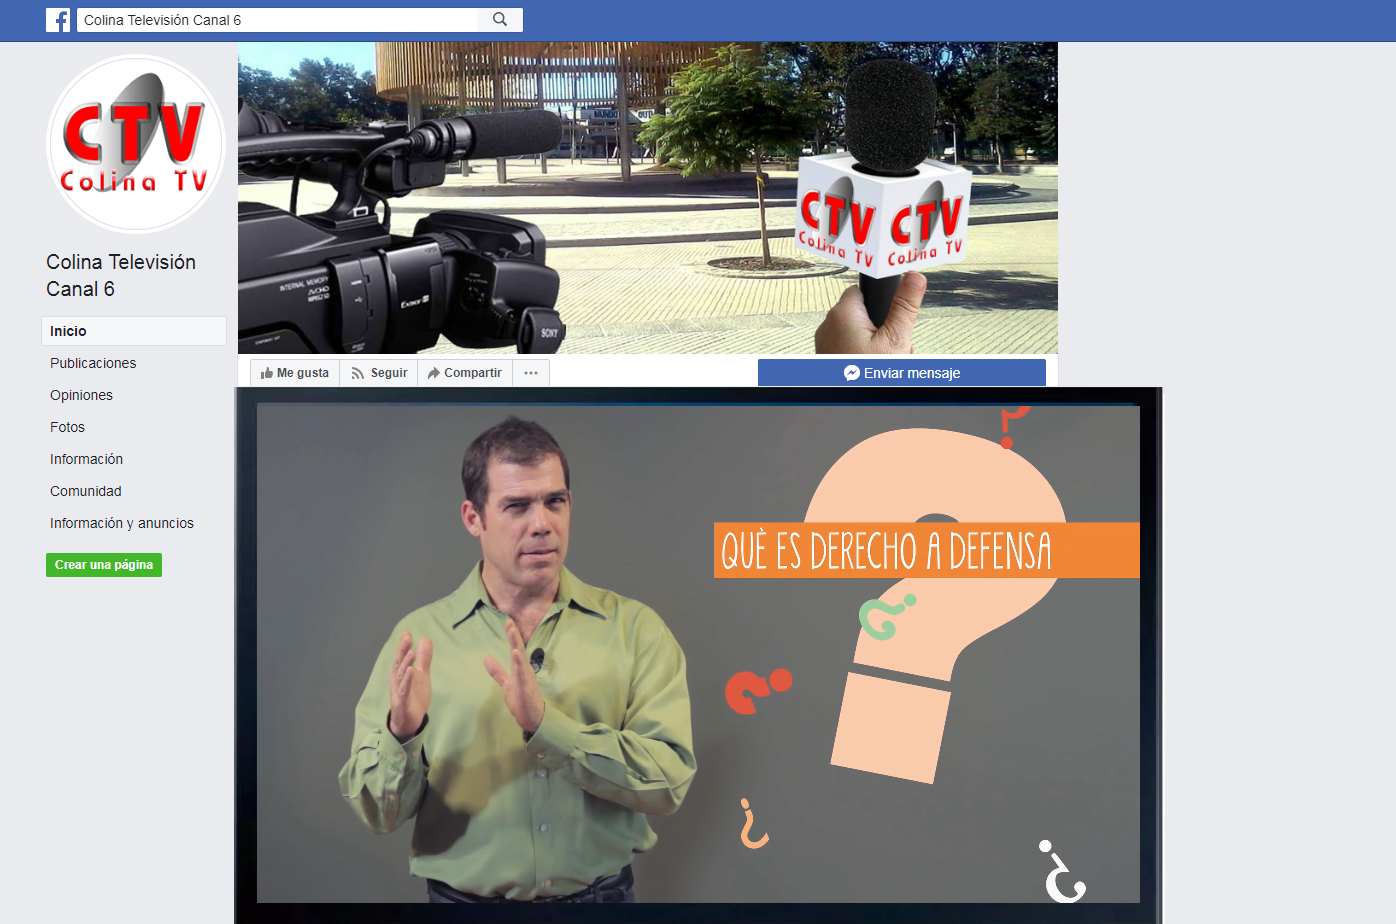 Colina TV está emitiendo 8 videos educativos sobre el proceso penal elaborados por la DPP y conducidos por al actor y abogado Álvaro Escobar.